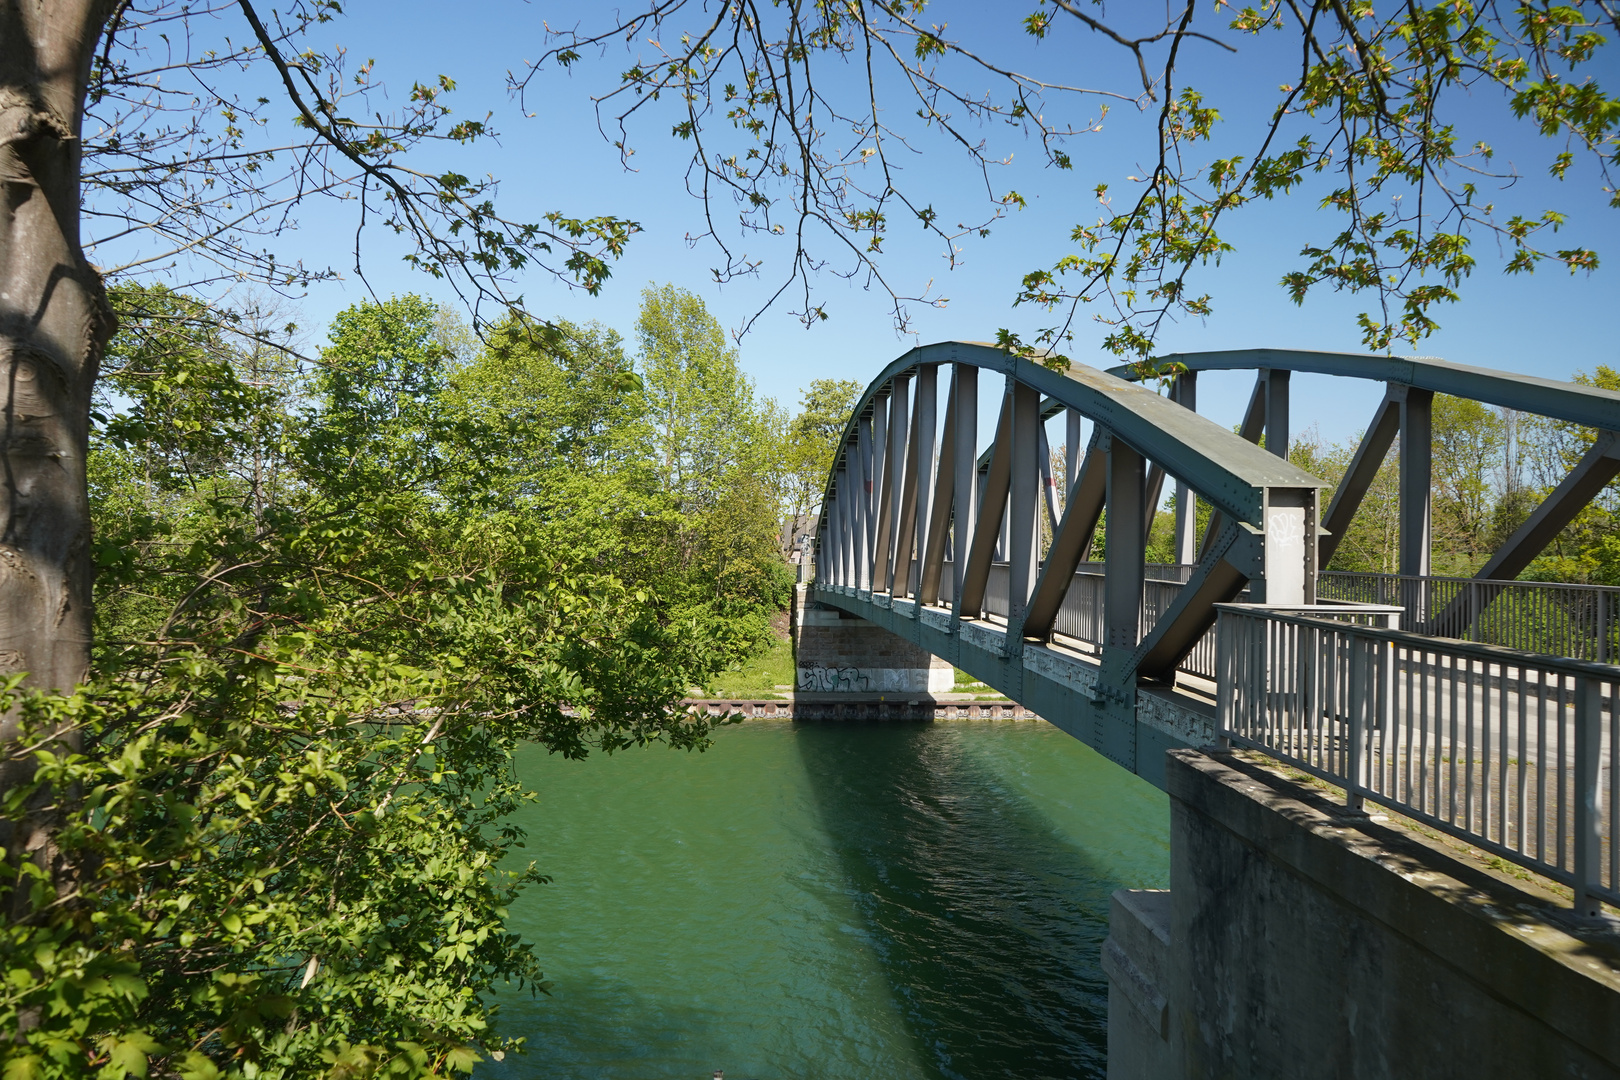 Brücke_Wesel-Datteln-Kanal